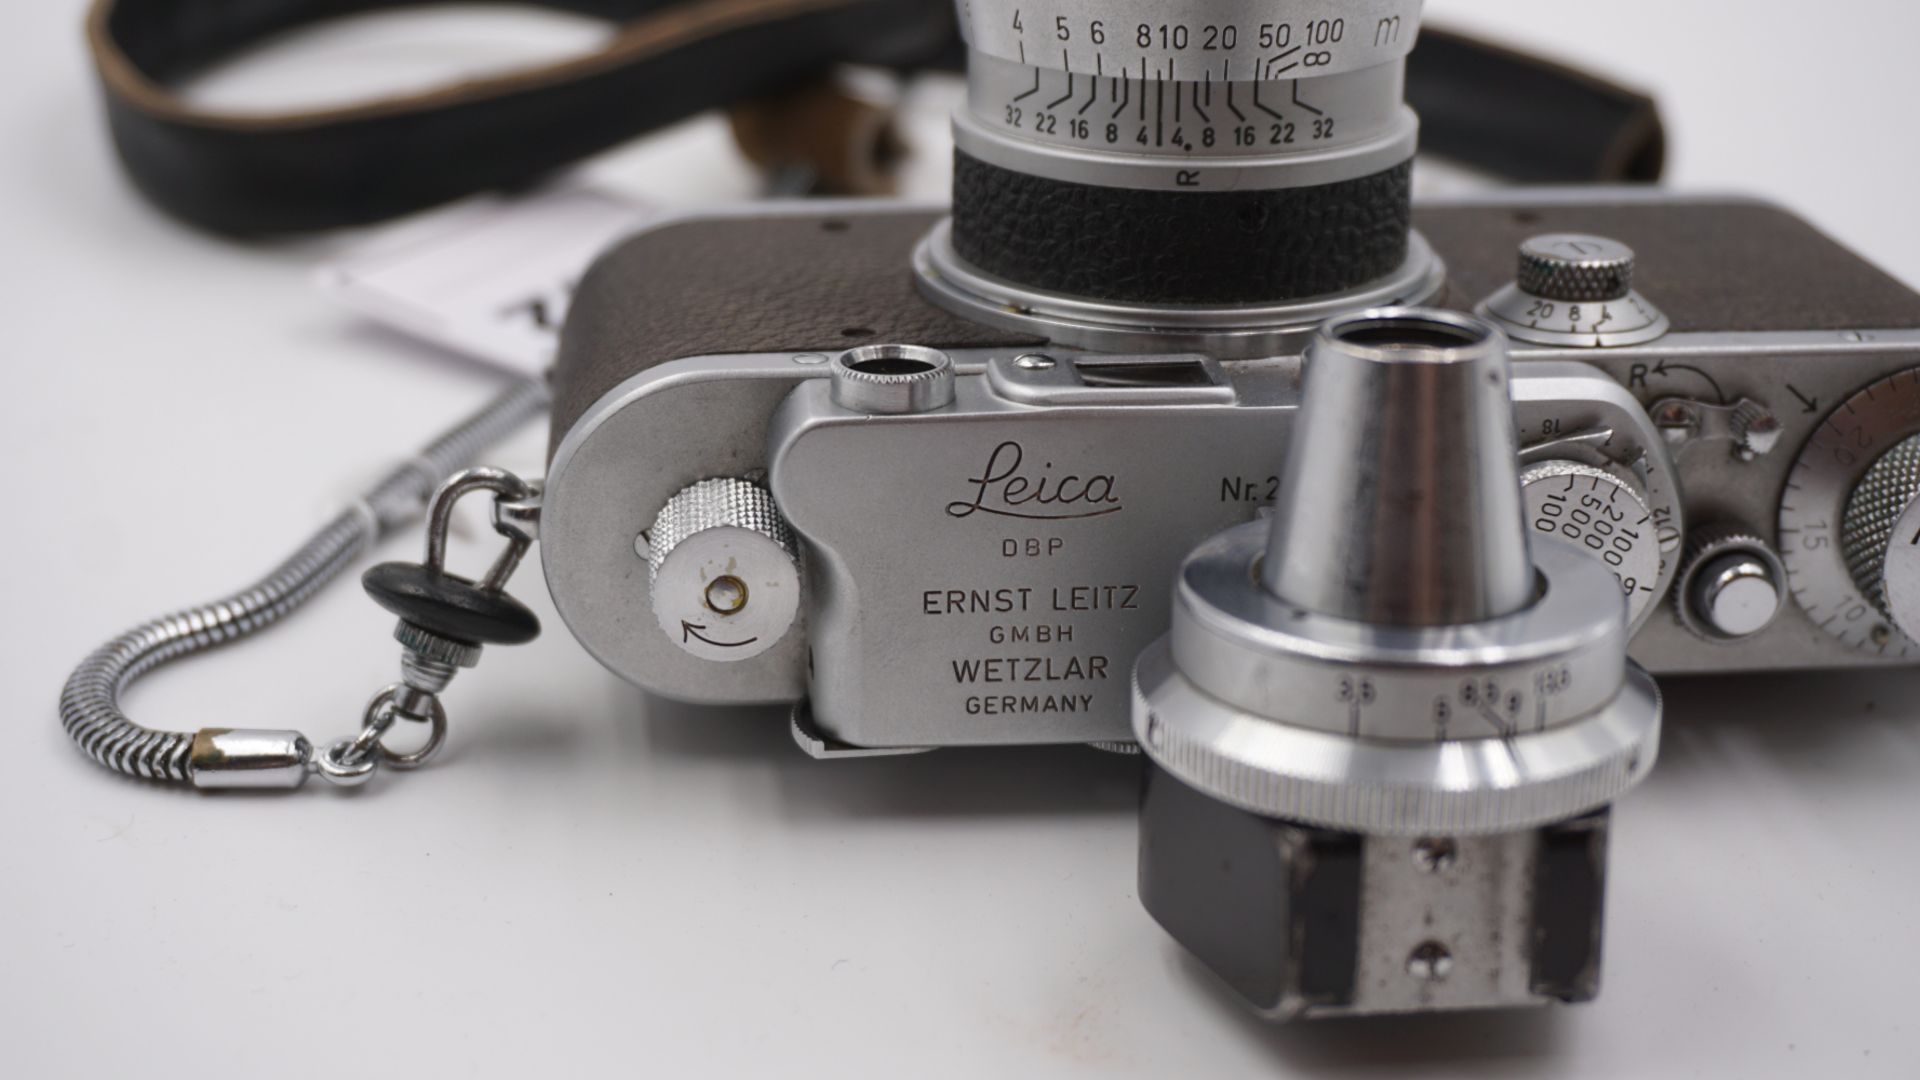 1 Fotoapparat LEICA "IIIa" wohl um 1938, num. "295977"/bez. "Ernst LEITZ GmbH, Wetzlar" - Bild 3 aus 4